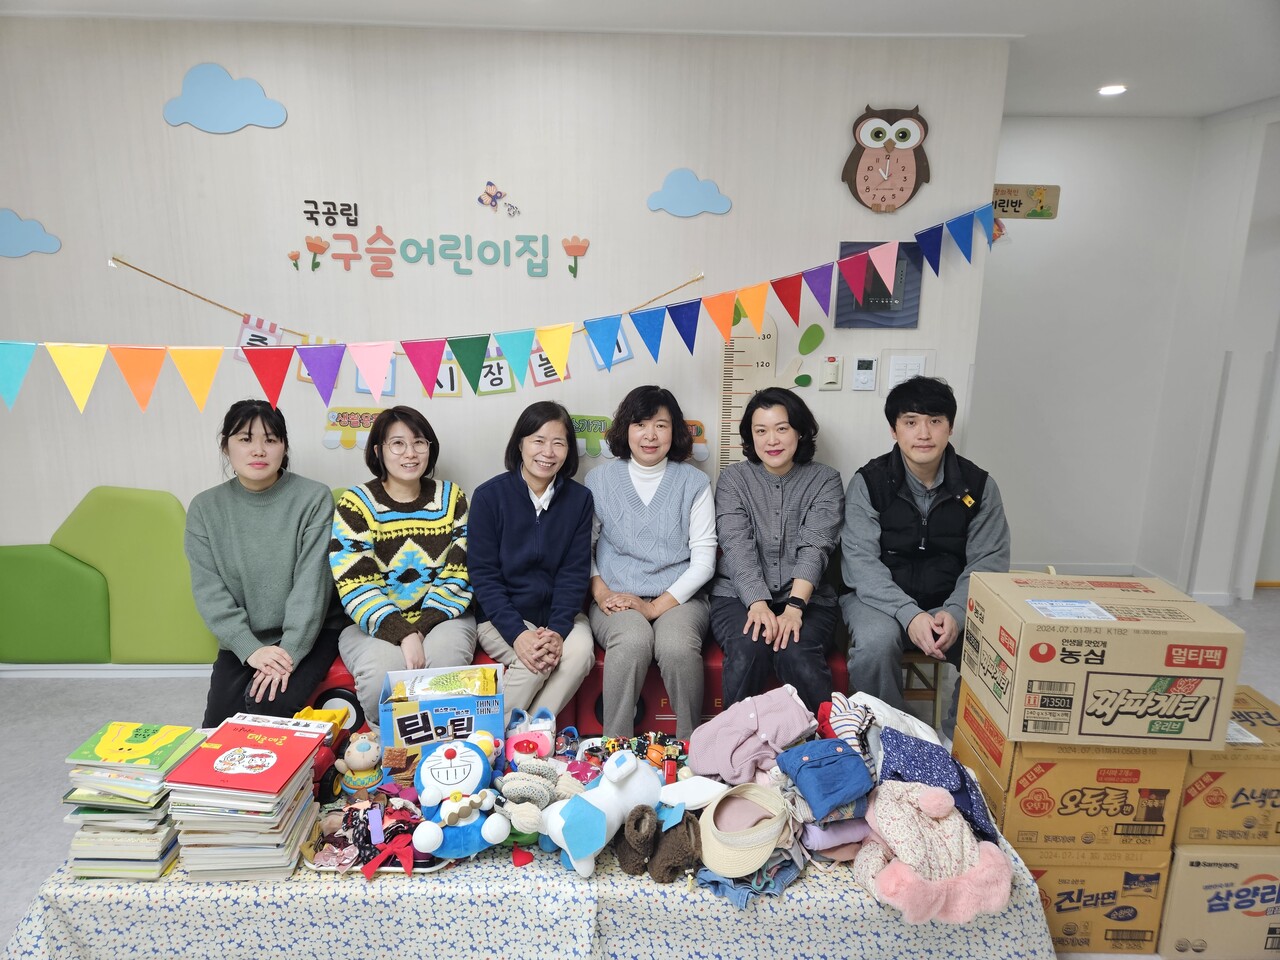 대전 구슬어린이집이 '사랑나눔 플리마켓' 행사를 통해 아동, 학부모로부터 전달받은 후원 물품을 대전가정위탁지원센터에 전달했다. 사진은 26일 열린 전달식 모습. 대전가정위탁지원센터 제공.